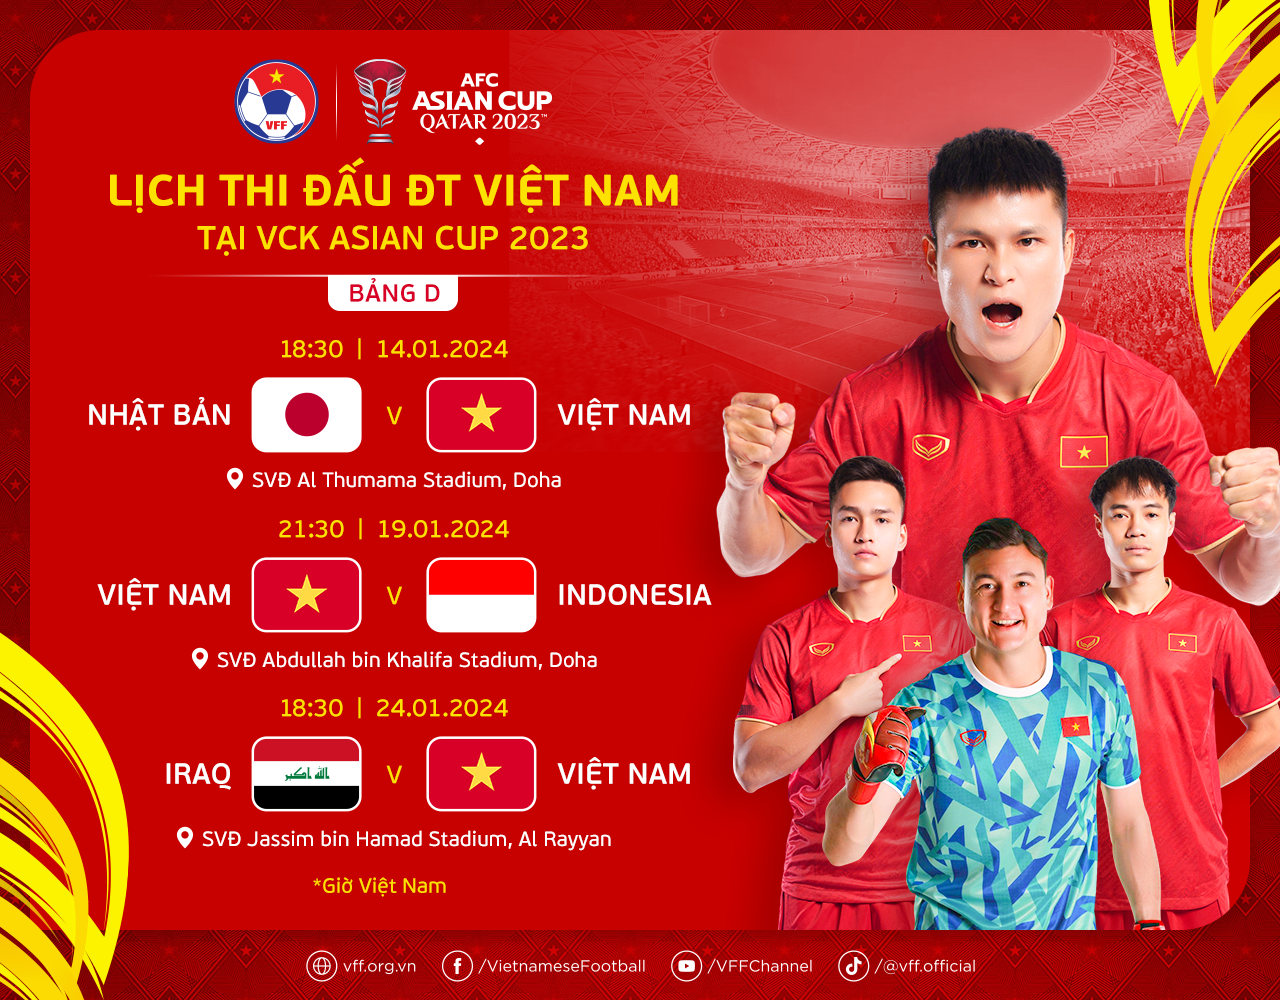 Lịch thi đấu của đội tuyển Việt Nam tại AFC Asian Cup 2023- Ảnh 1.